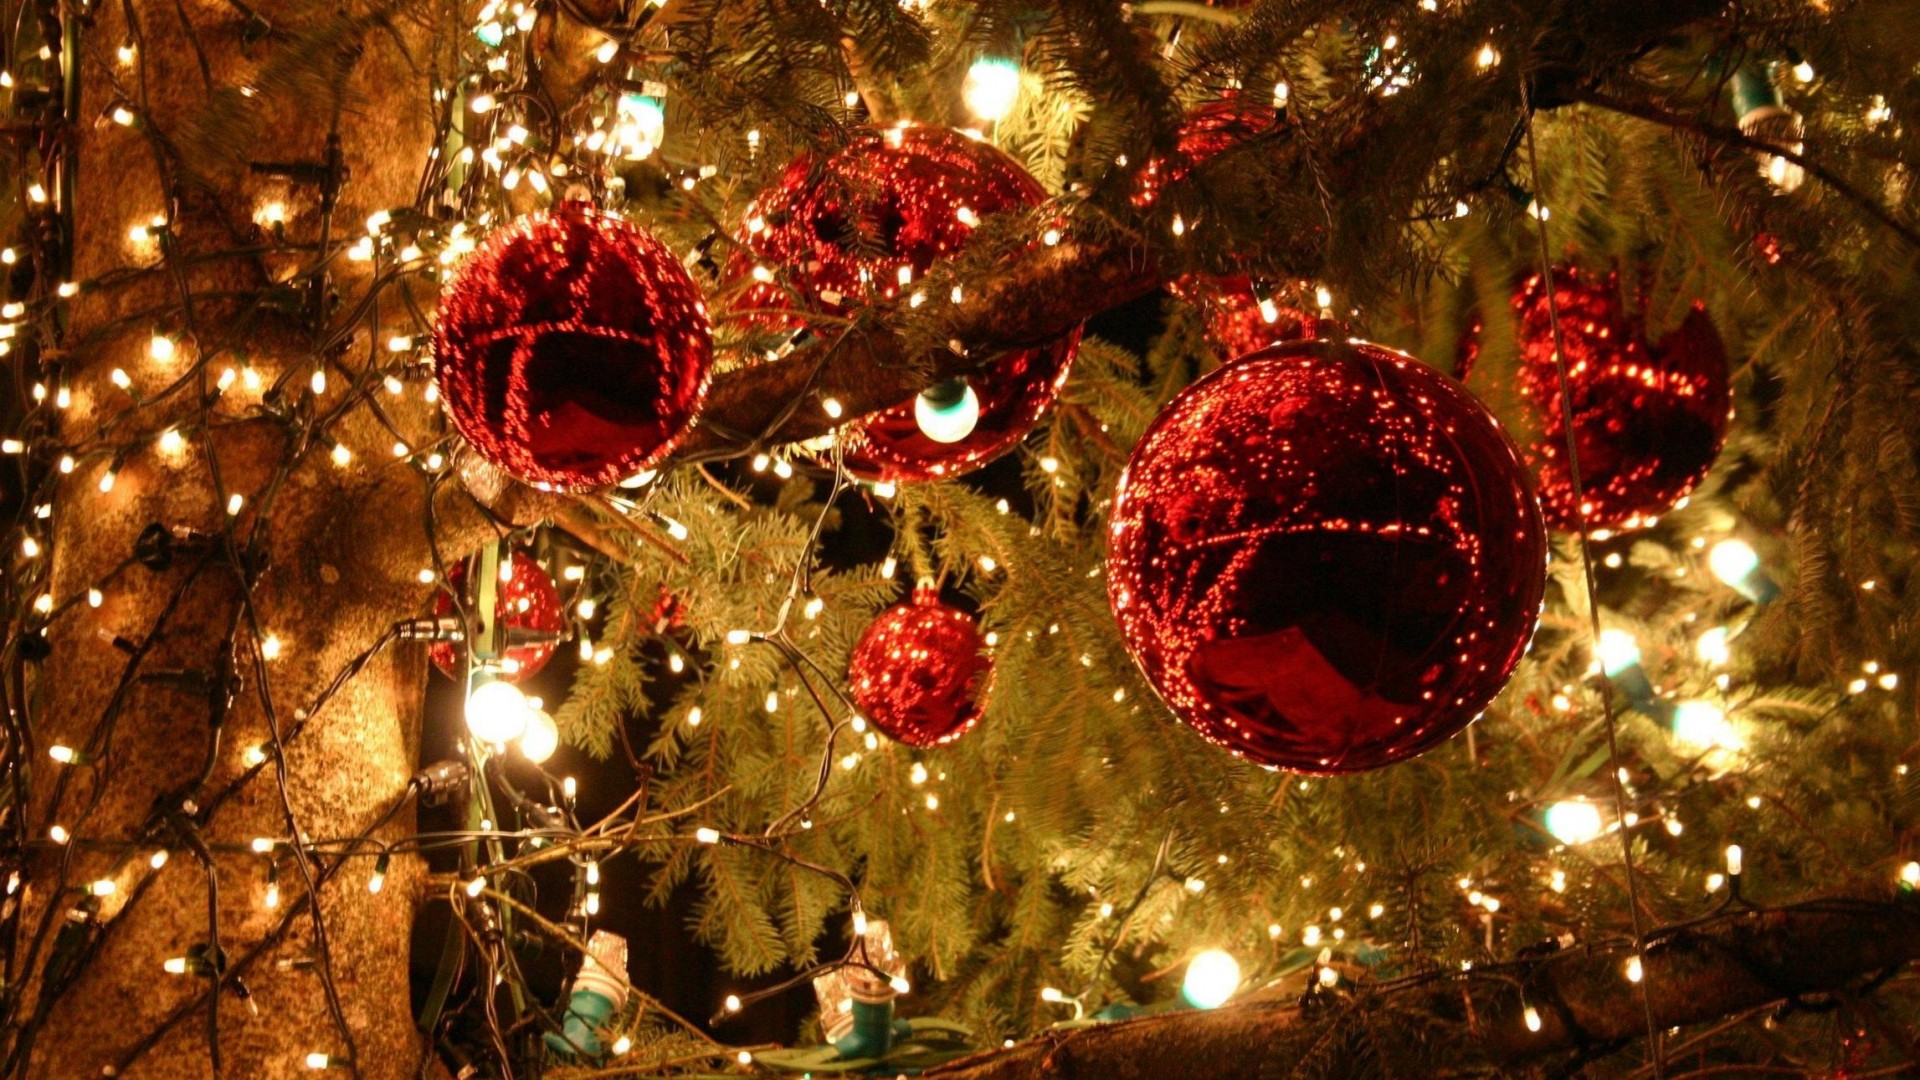 Topnews: Vesel božič in blagoslovljene praznike vam želimo